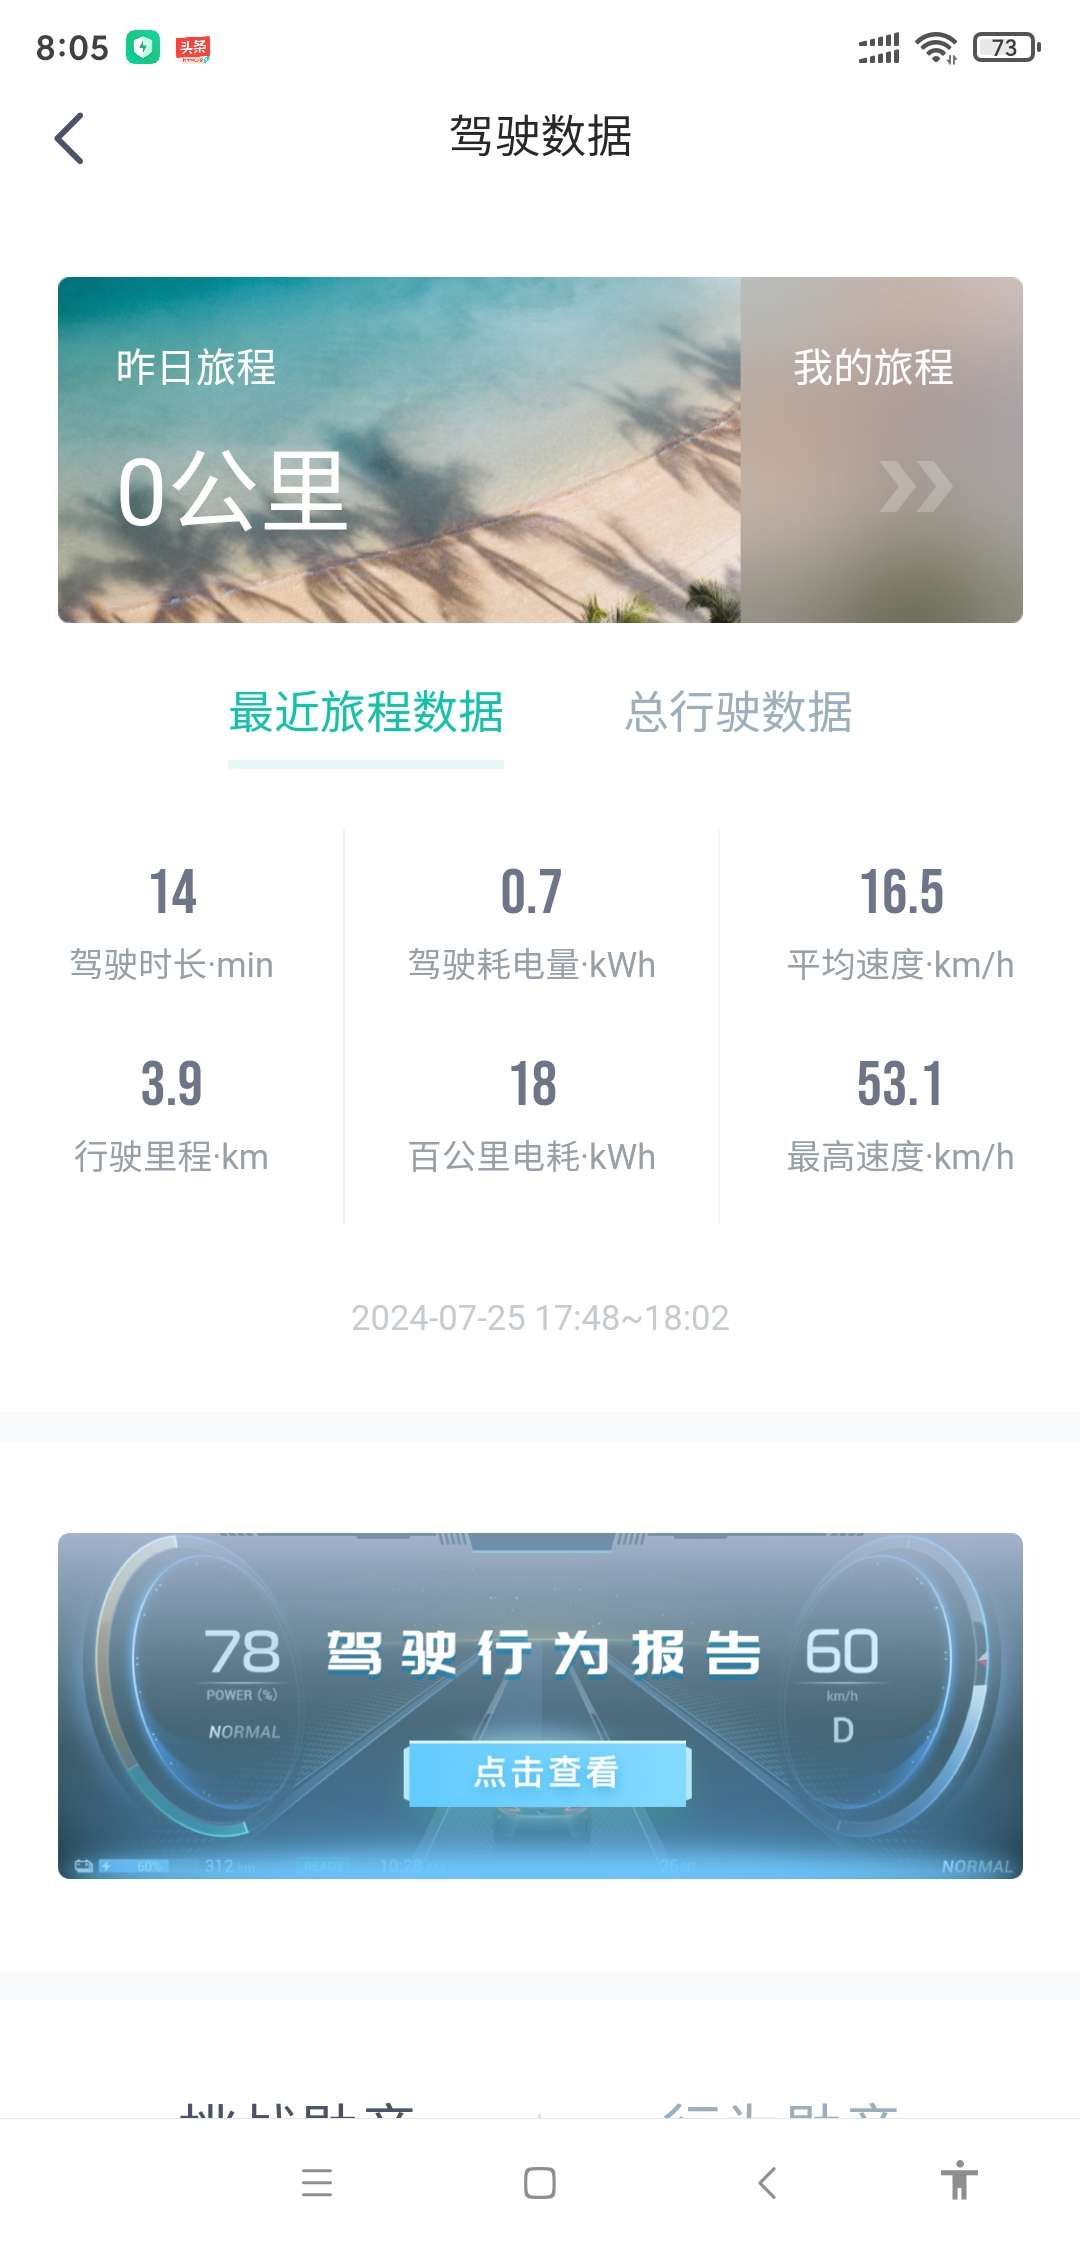 城市：北京

温度：35

车型型号：埃安S PLUS 80

能耗表现：0.8kWh 

其他备注：上下班代步，时速40公里左右，单踏模式